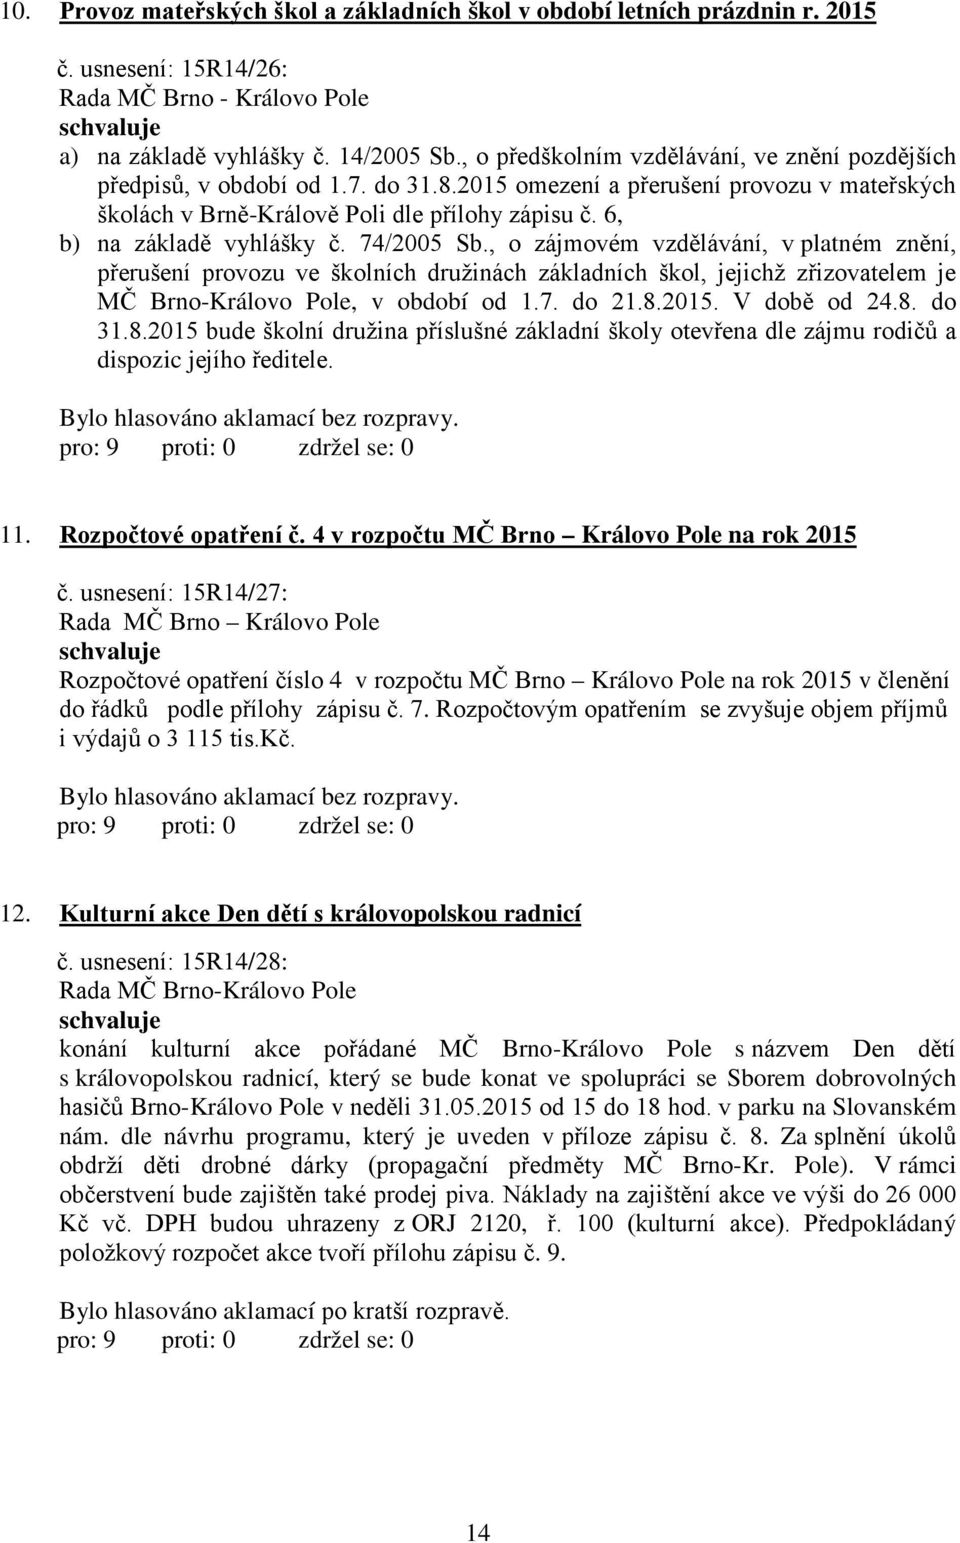 6, b) na základě vyhlášky č. 74/2005 Sb., o zájmovém vzdělávání, v platném znění, přerušení provozu ve školních družinách základních škol, jejichž zřizovatelem je MČ Brno-Královo Pole, v období od 1.